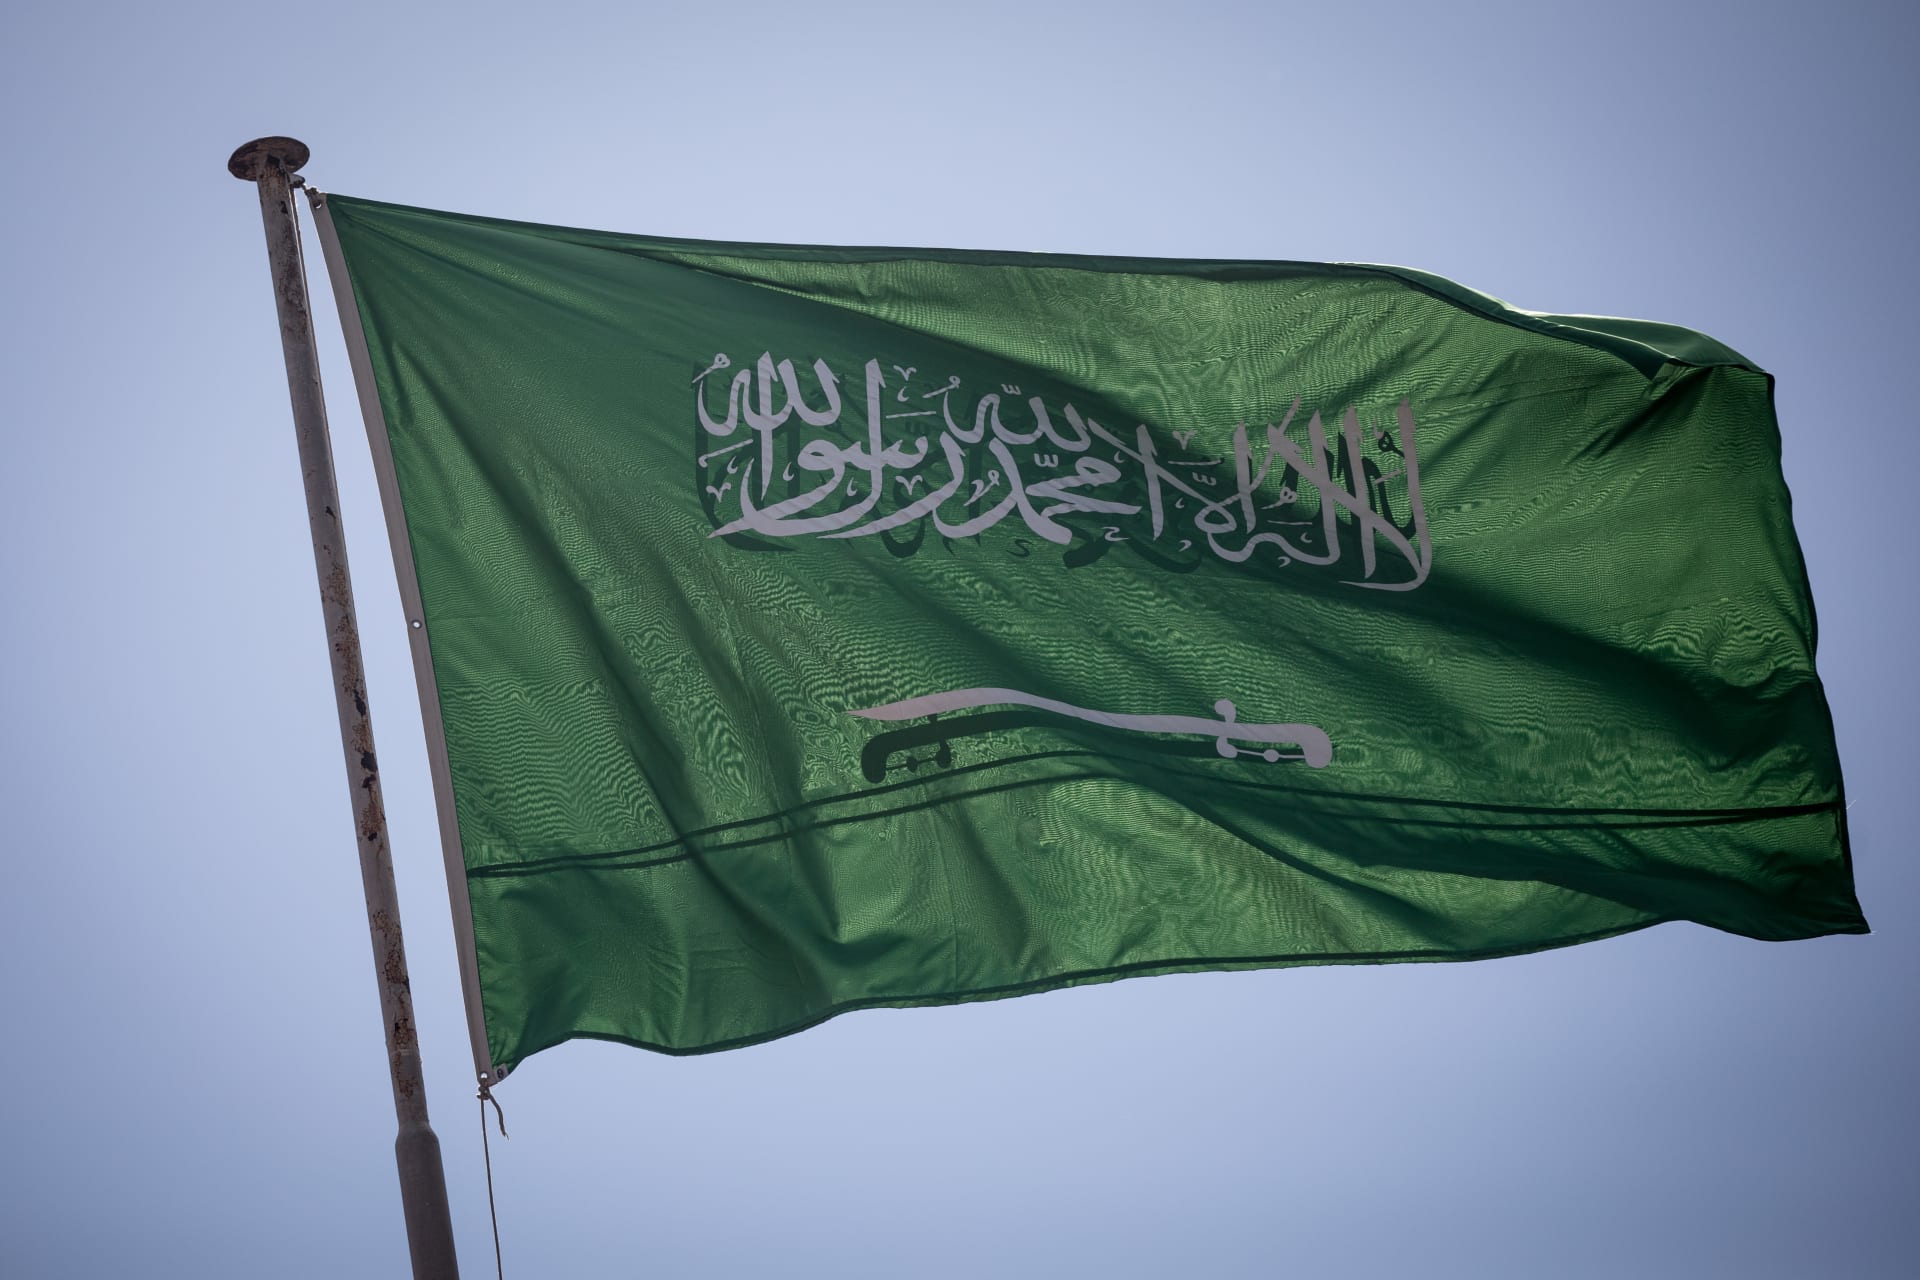 السعودية تصنف جمعية لبنانية "كيانا إرهابيا" وتحظر التعامل معها